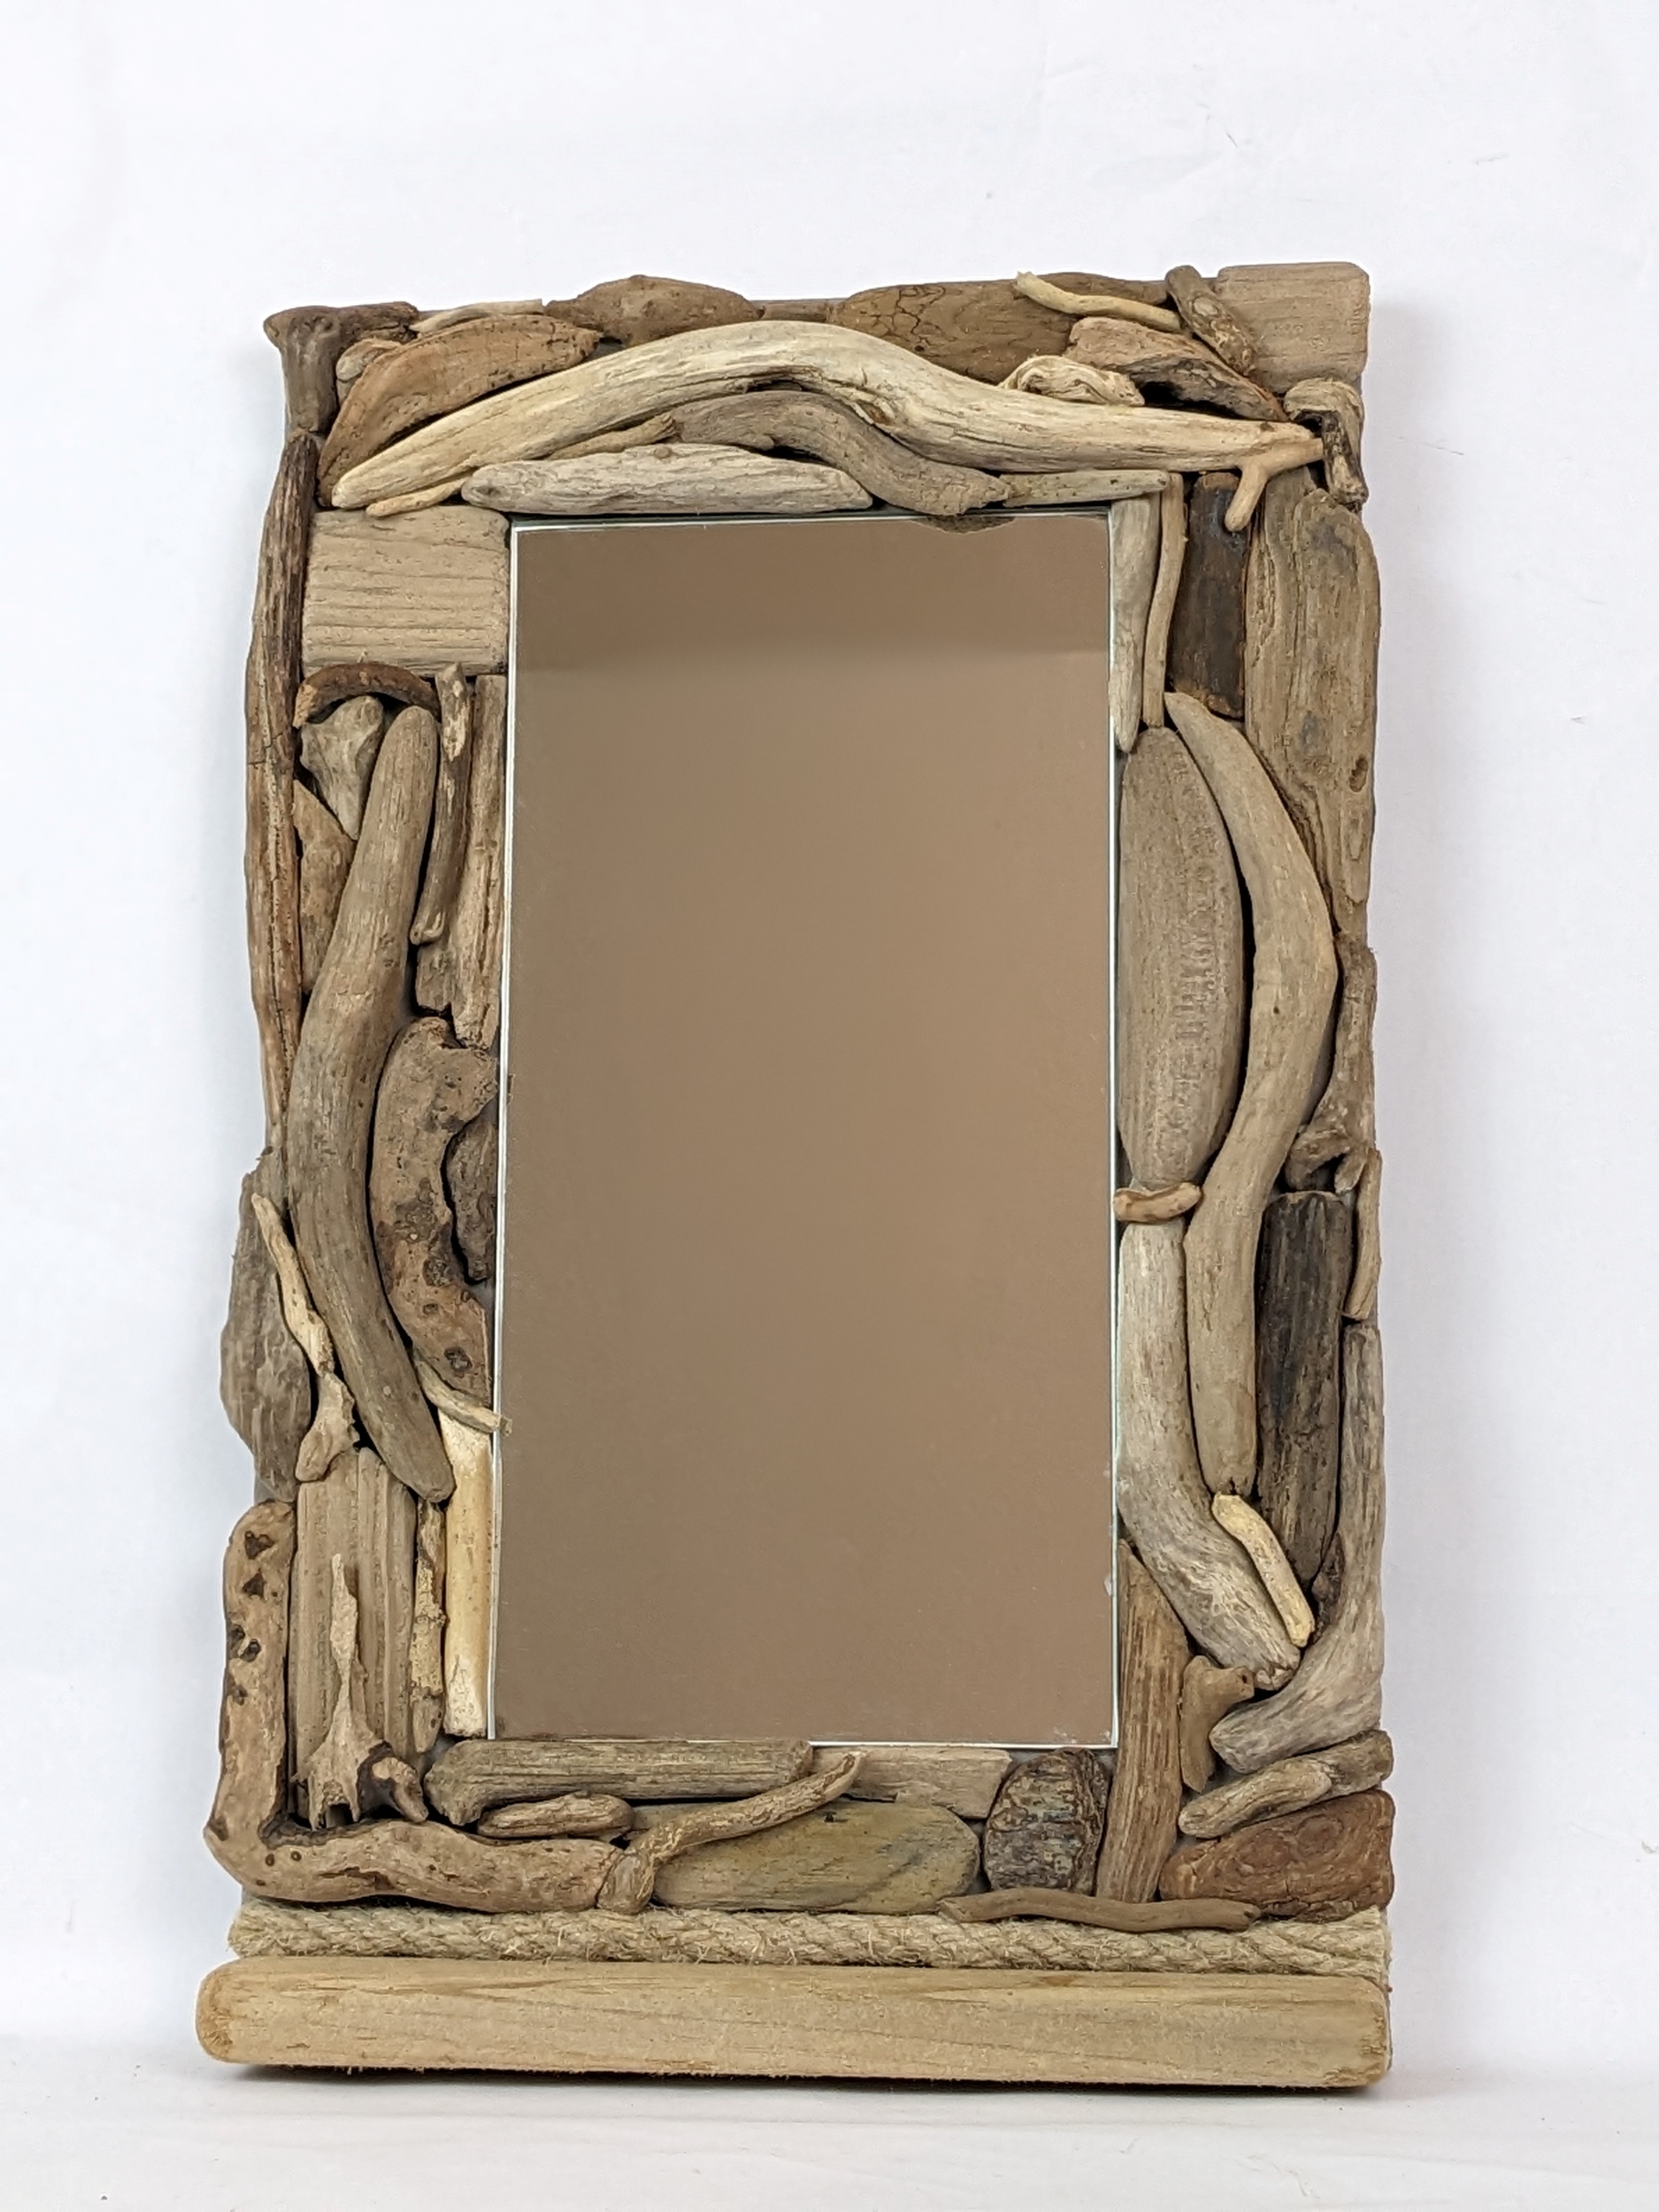 Miroir rectangulaire bois flotté - Pure Nature Paillotes en Bambou